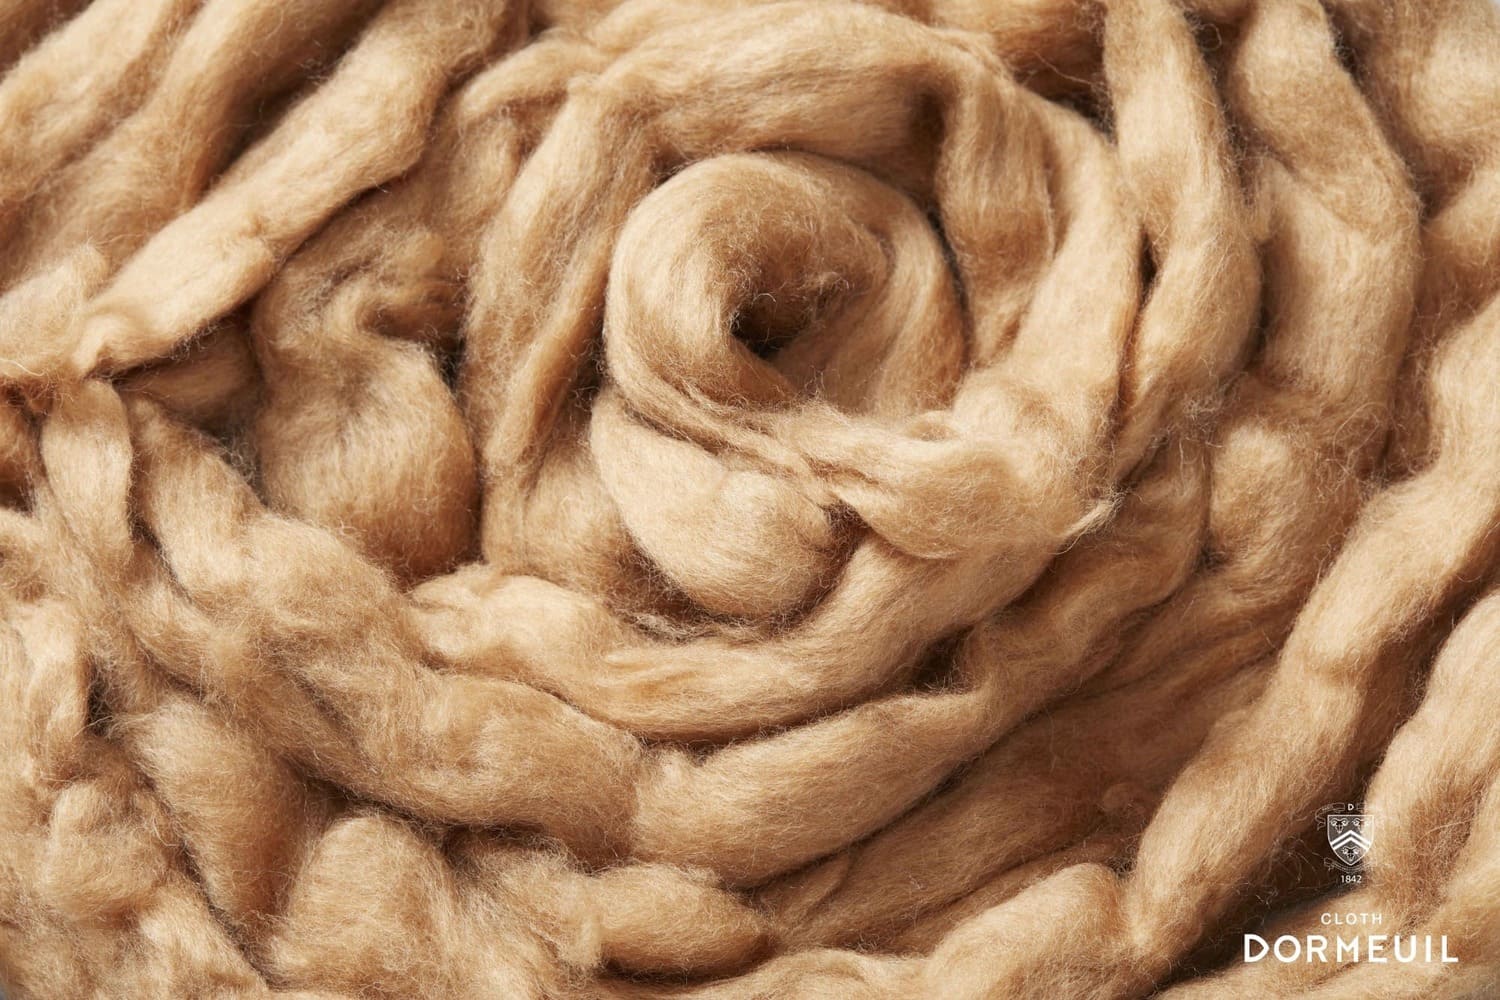 Грациозная викунья, чье волокно так ценится в текстильном мире.